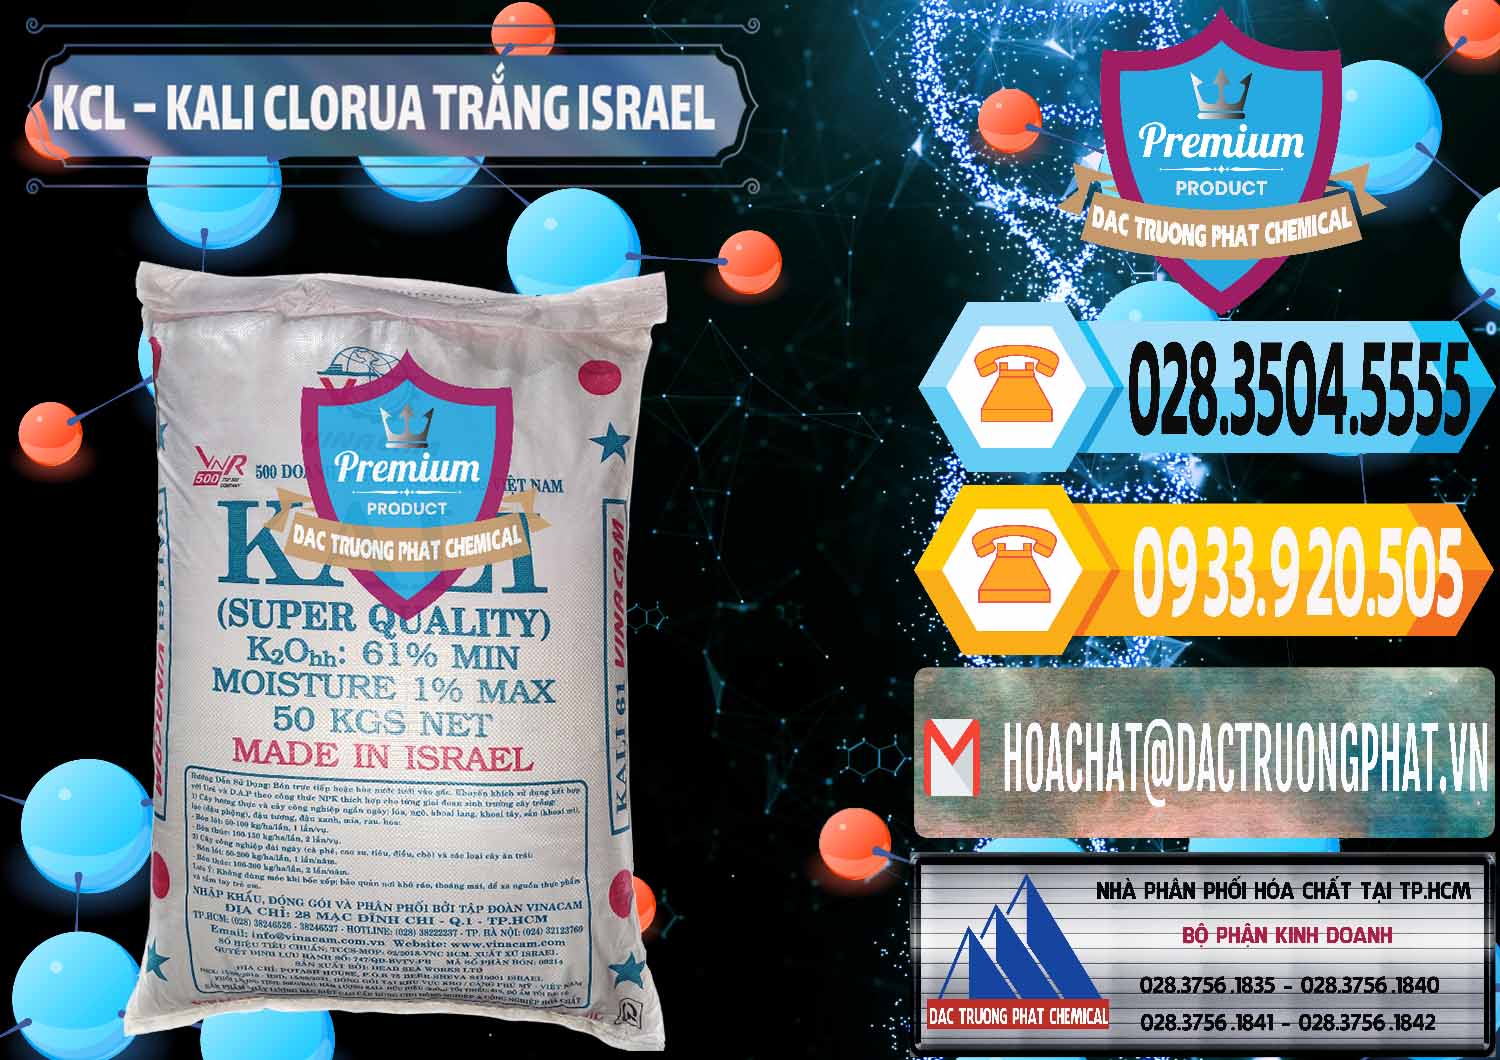 Cty kinh doanh & bán KCL – Kali Clorua Trắng Israel - 0087 - Cty bán ( cung cấp ) hóa chất tại TP.HCM - hoachattayrua.net